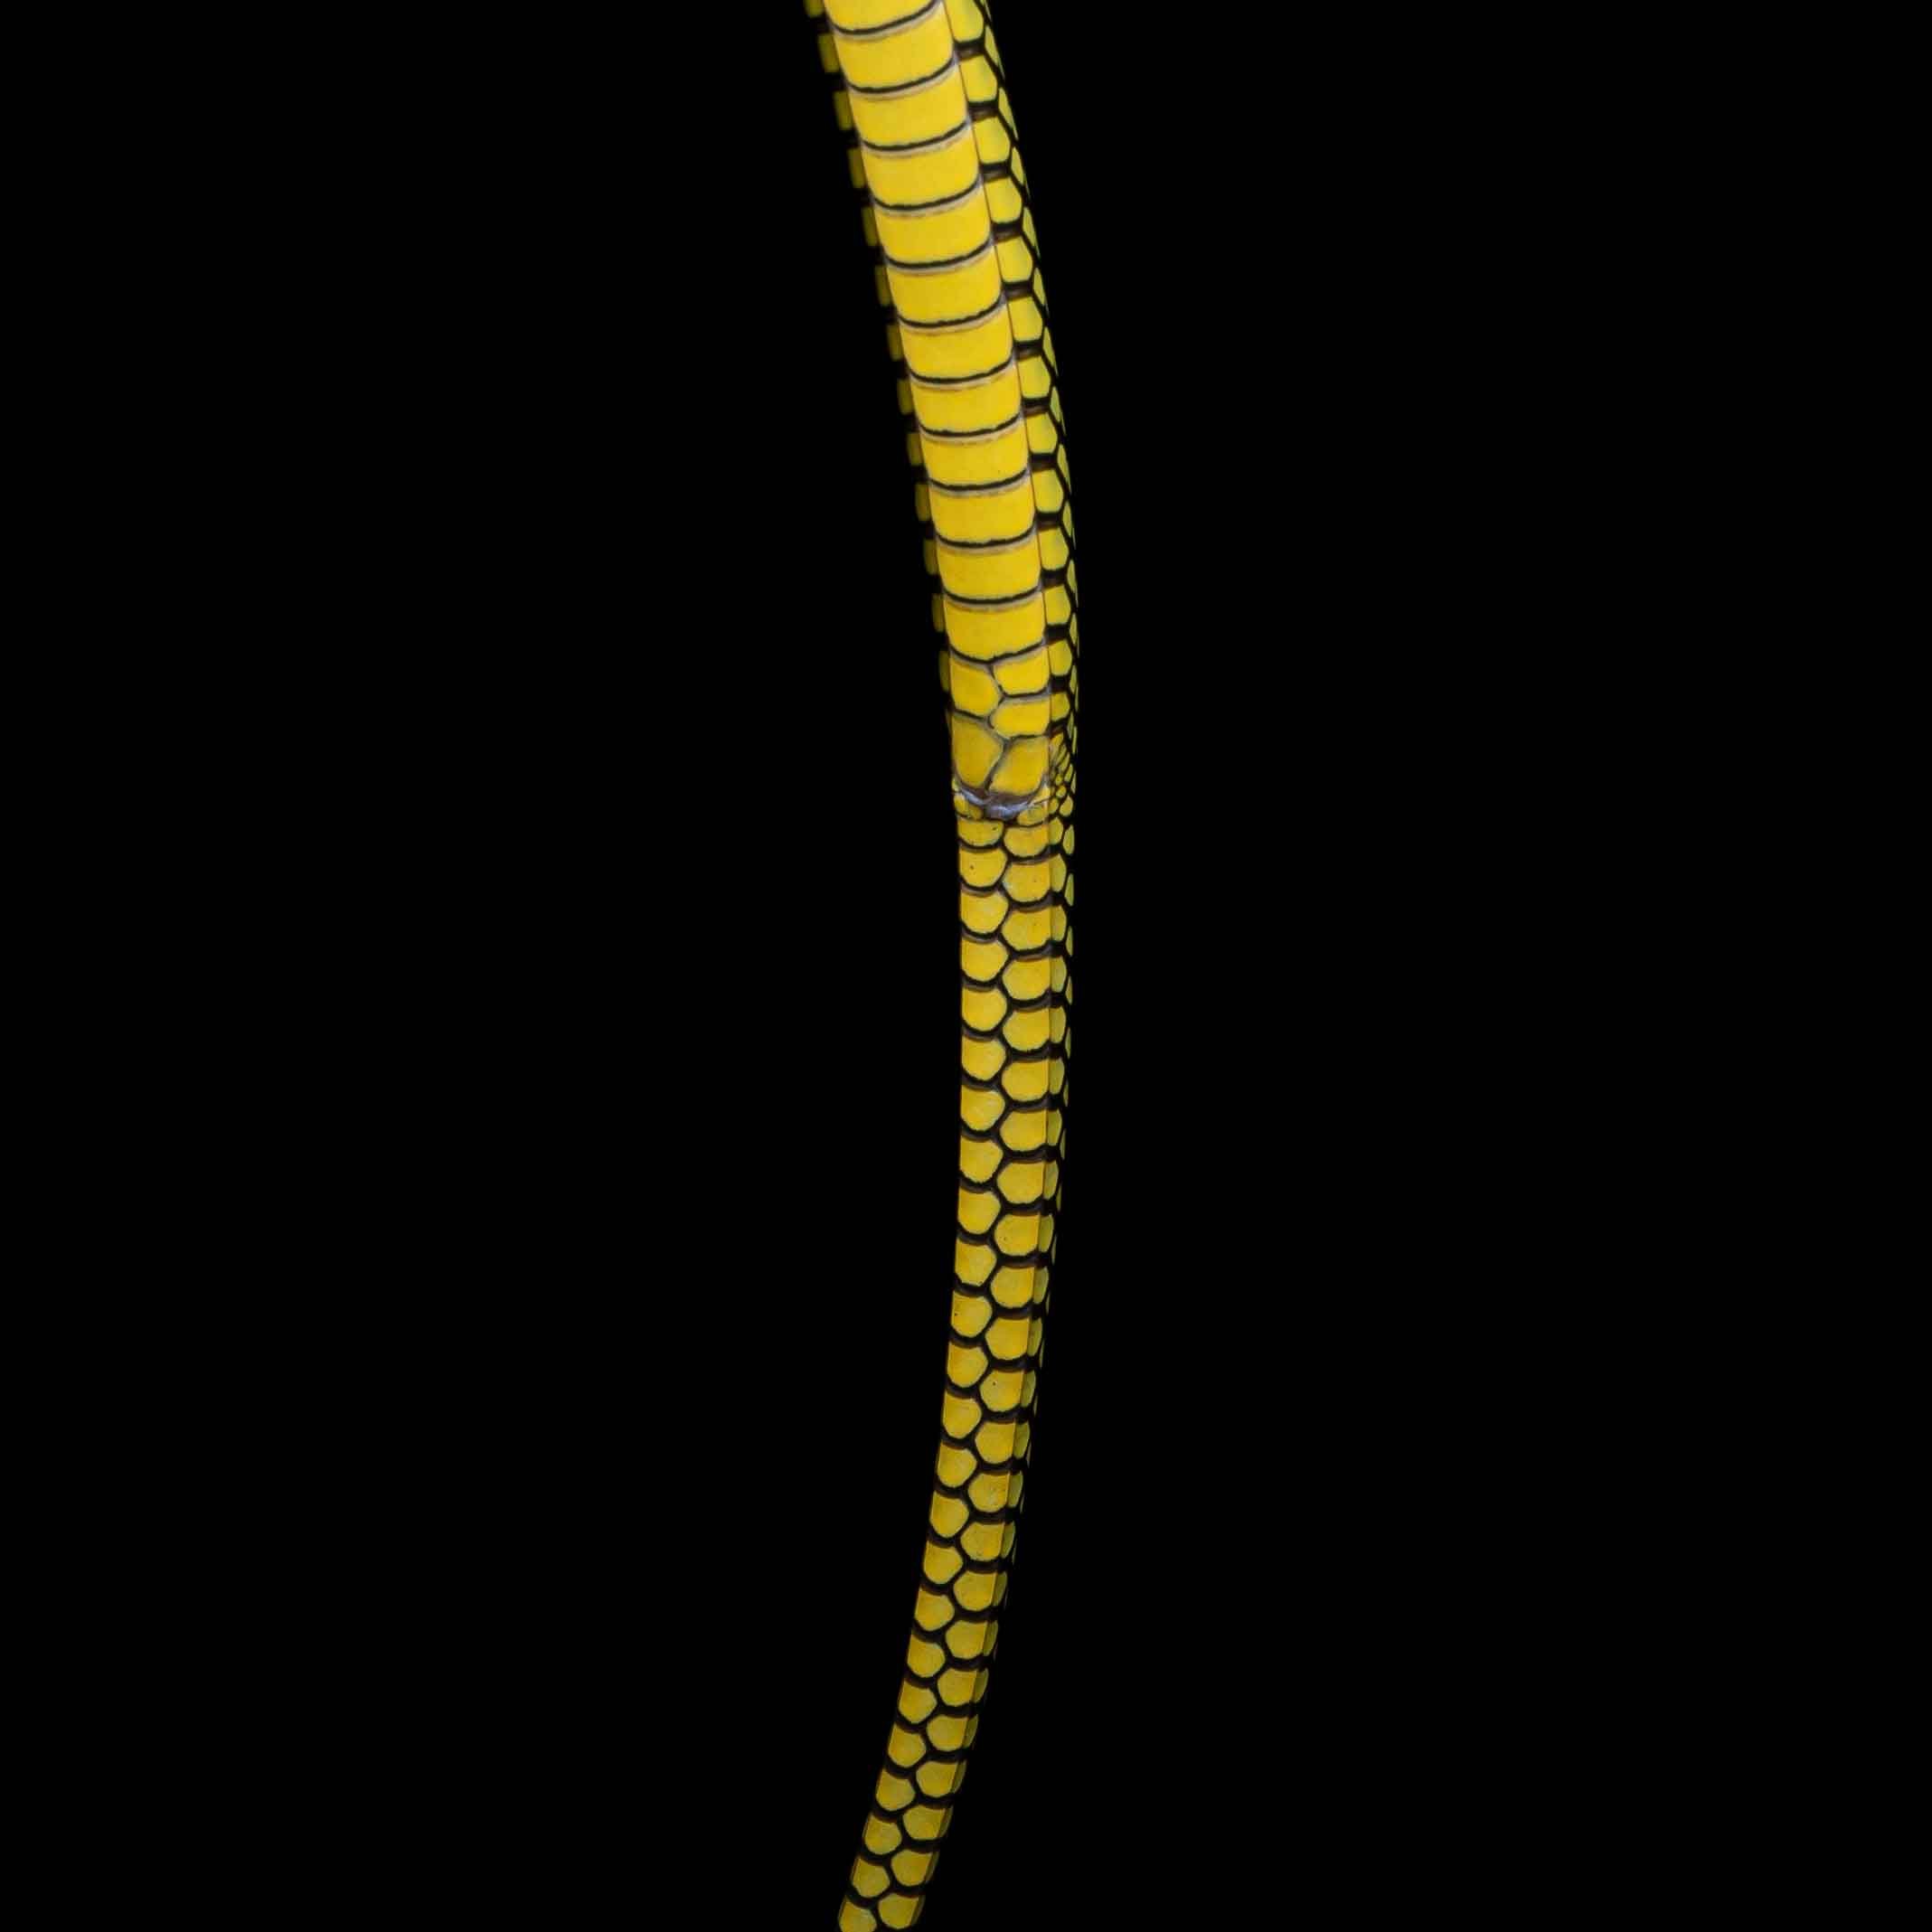 Paradise flying snake - Chrysopelea paradisi